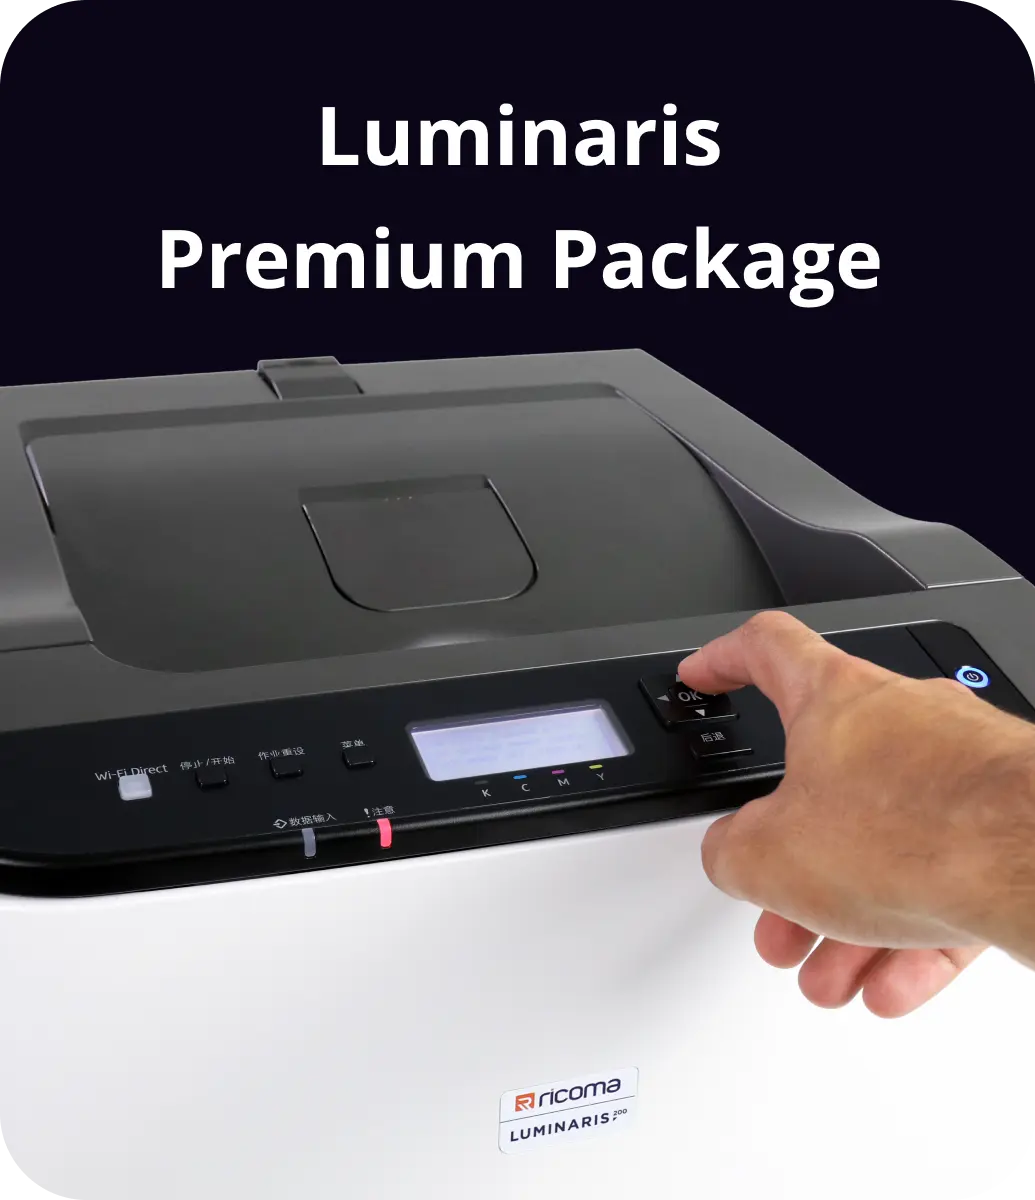  Impresoras - Impresoras y Accesorios: Productos de Oficina:  Laser Printers, Label Printers y más